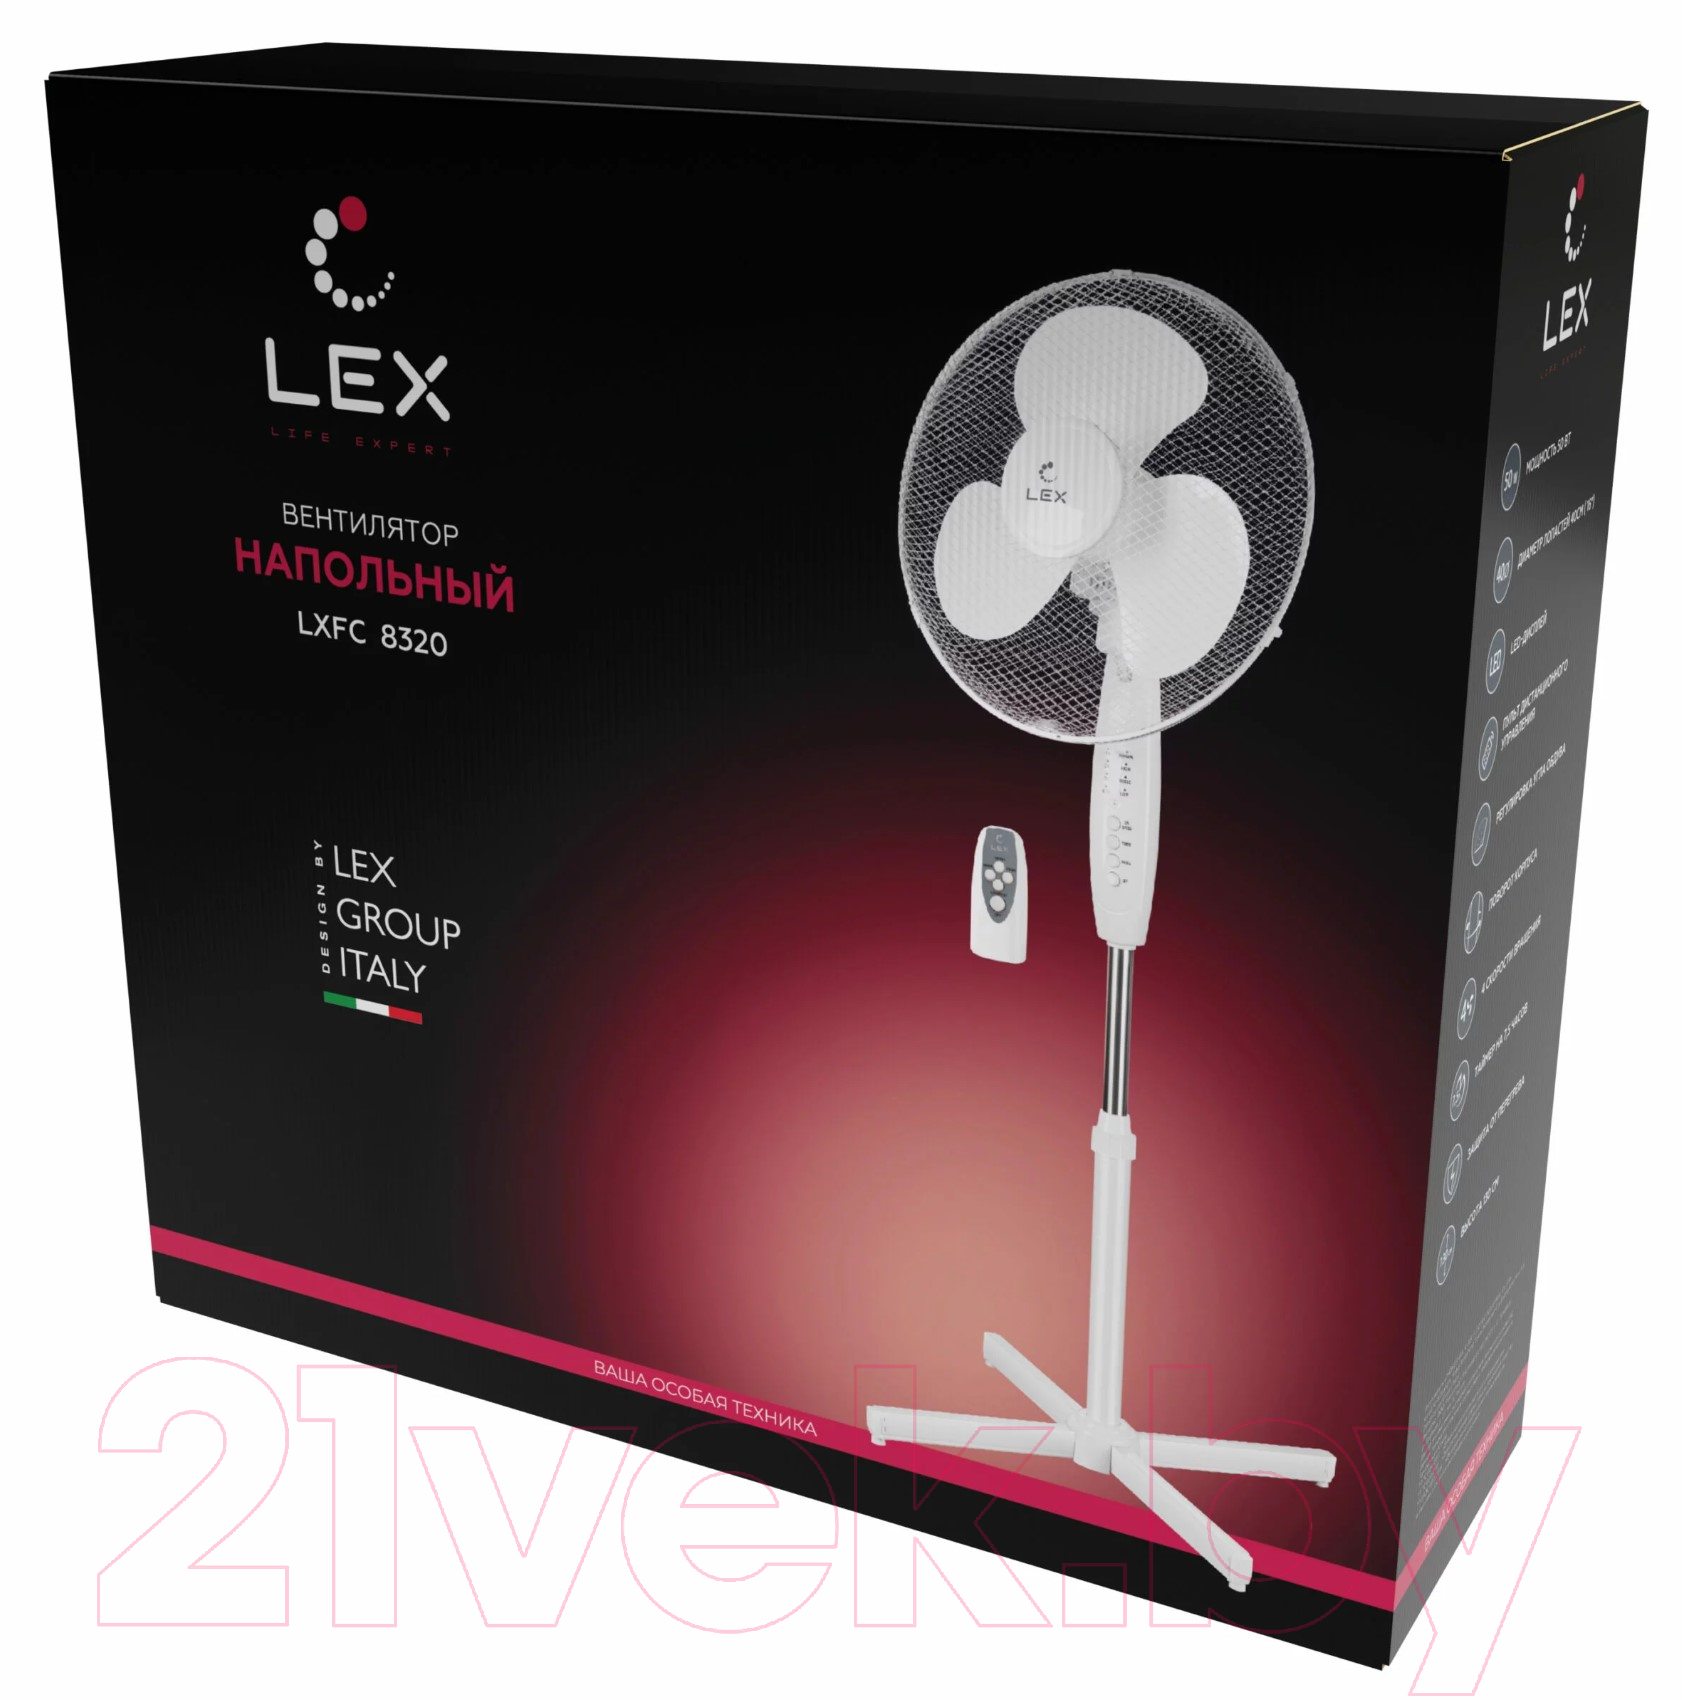 Вентилятор Lex LXFC 8320